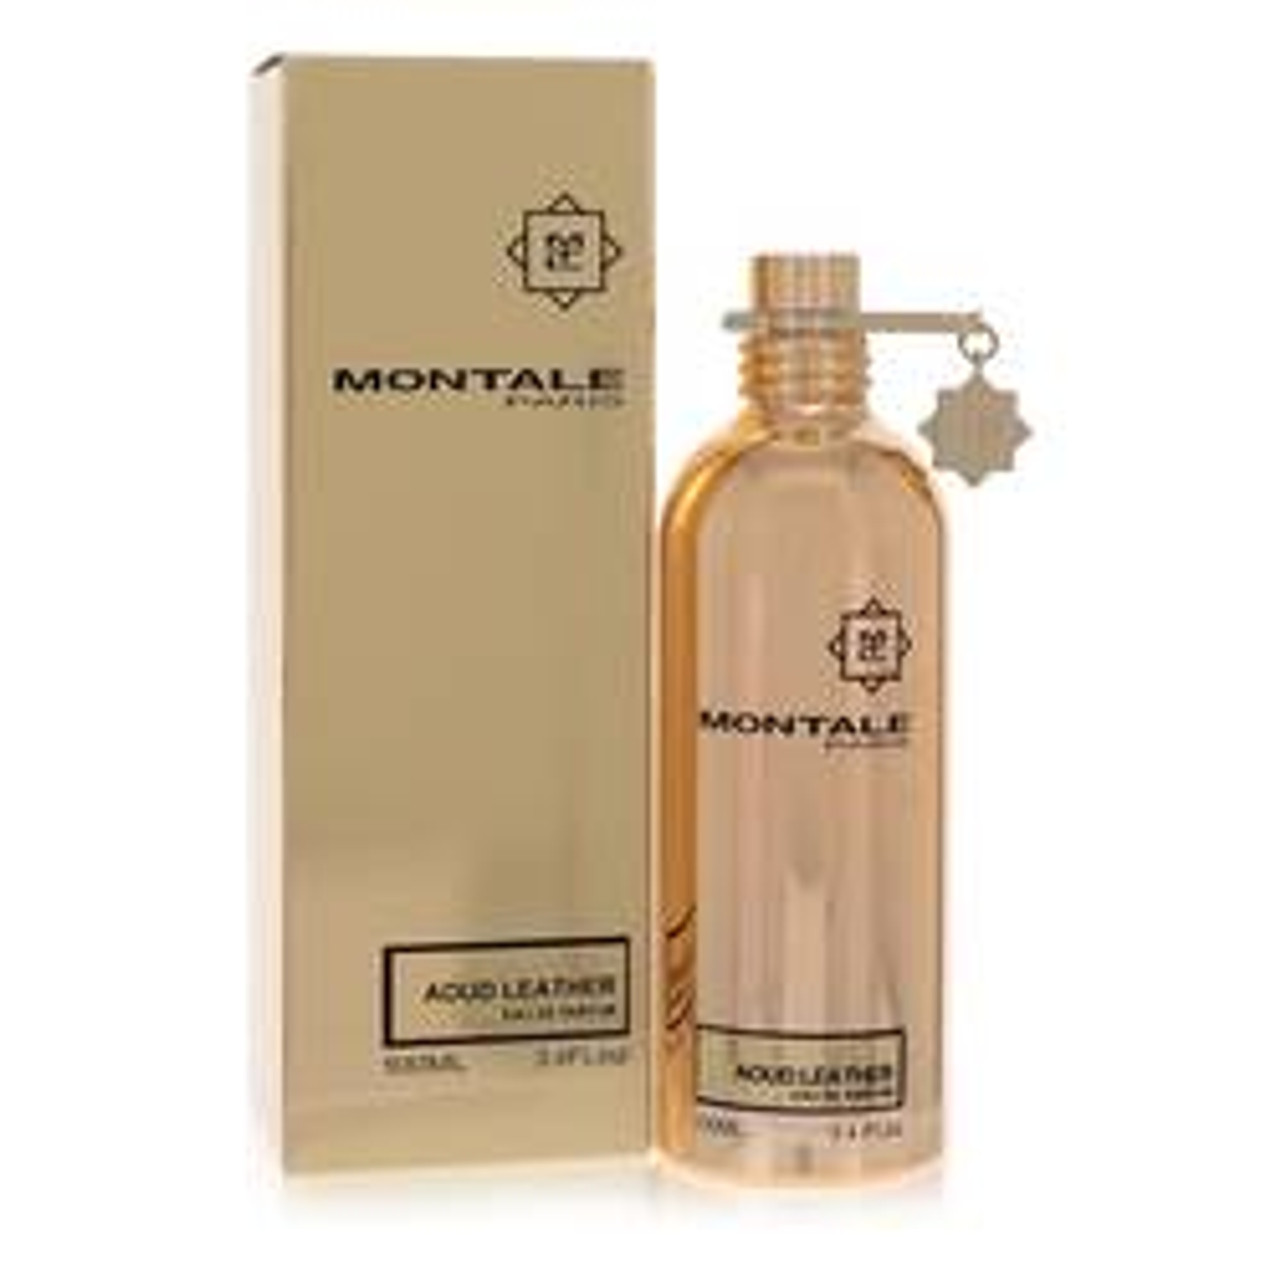 Montale Aoud Leather Perfume By Montale Eau De Parfum Spray (Unisex) 3.4 oz for Women - *Pre-Order